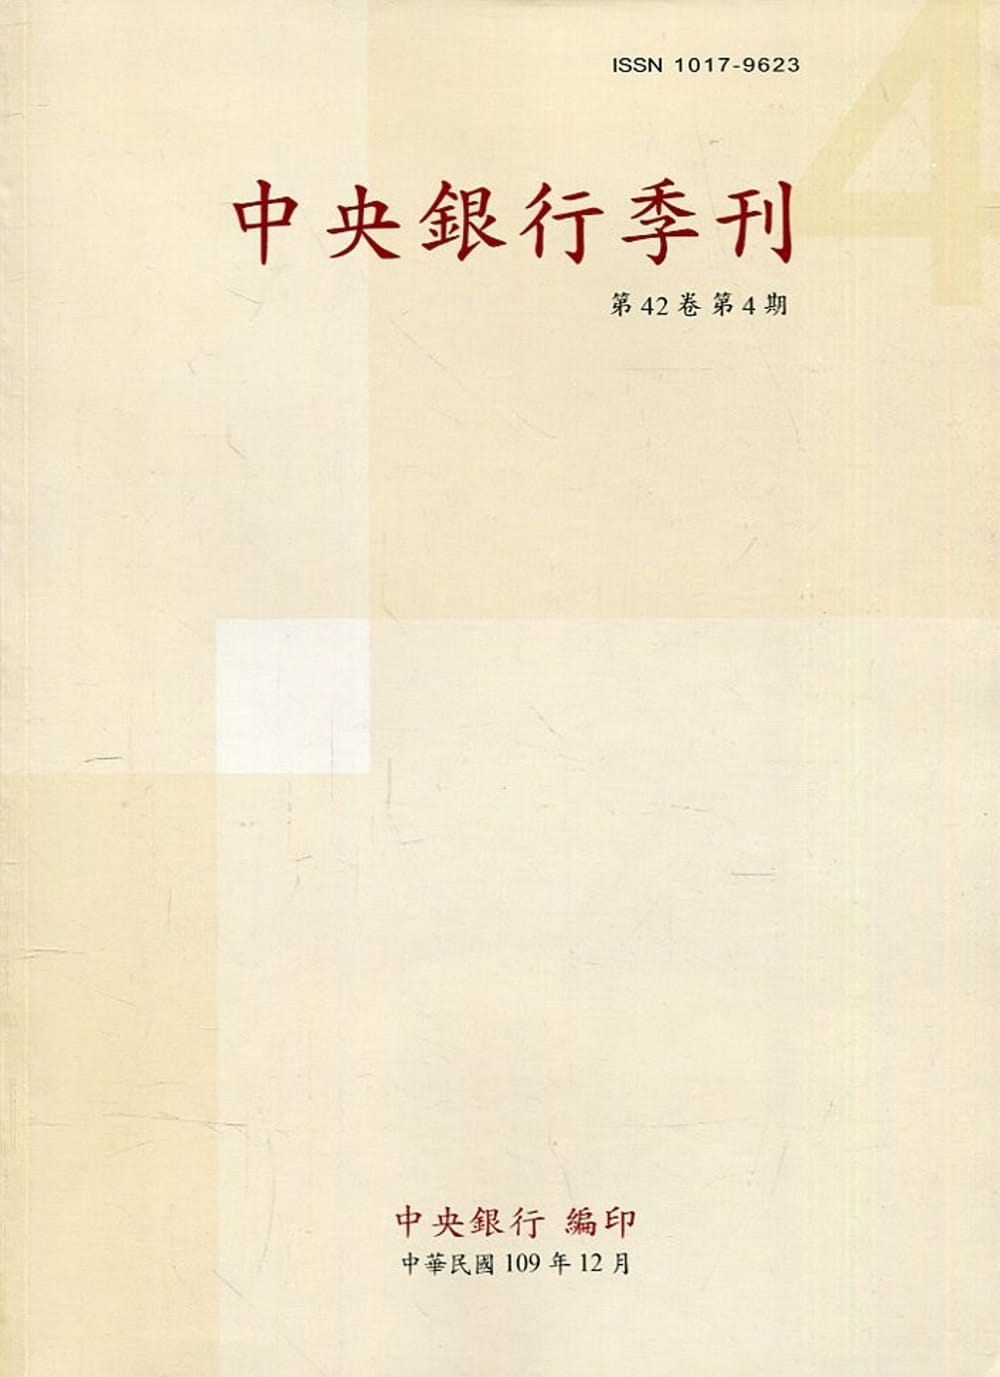 中央銀行季刊42卷4期(109.12)